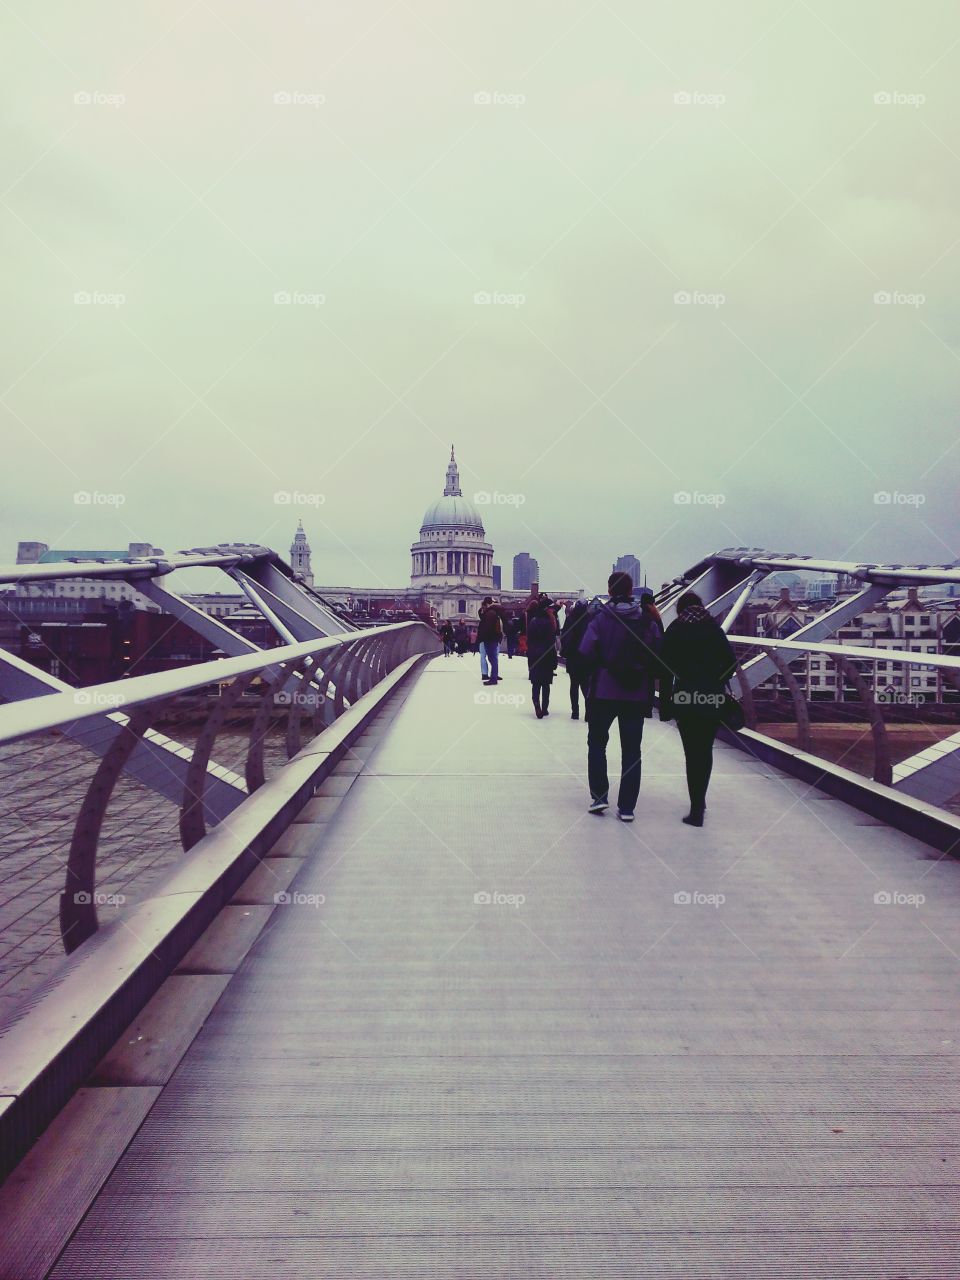 Millennium Bridge,
London